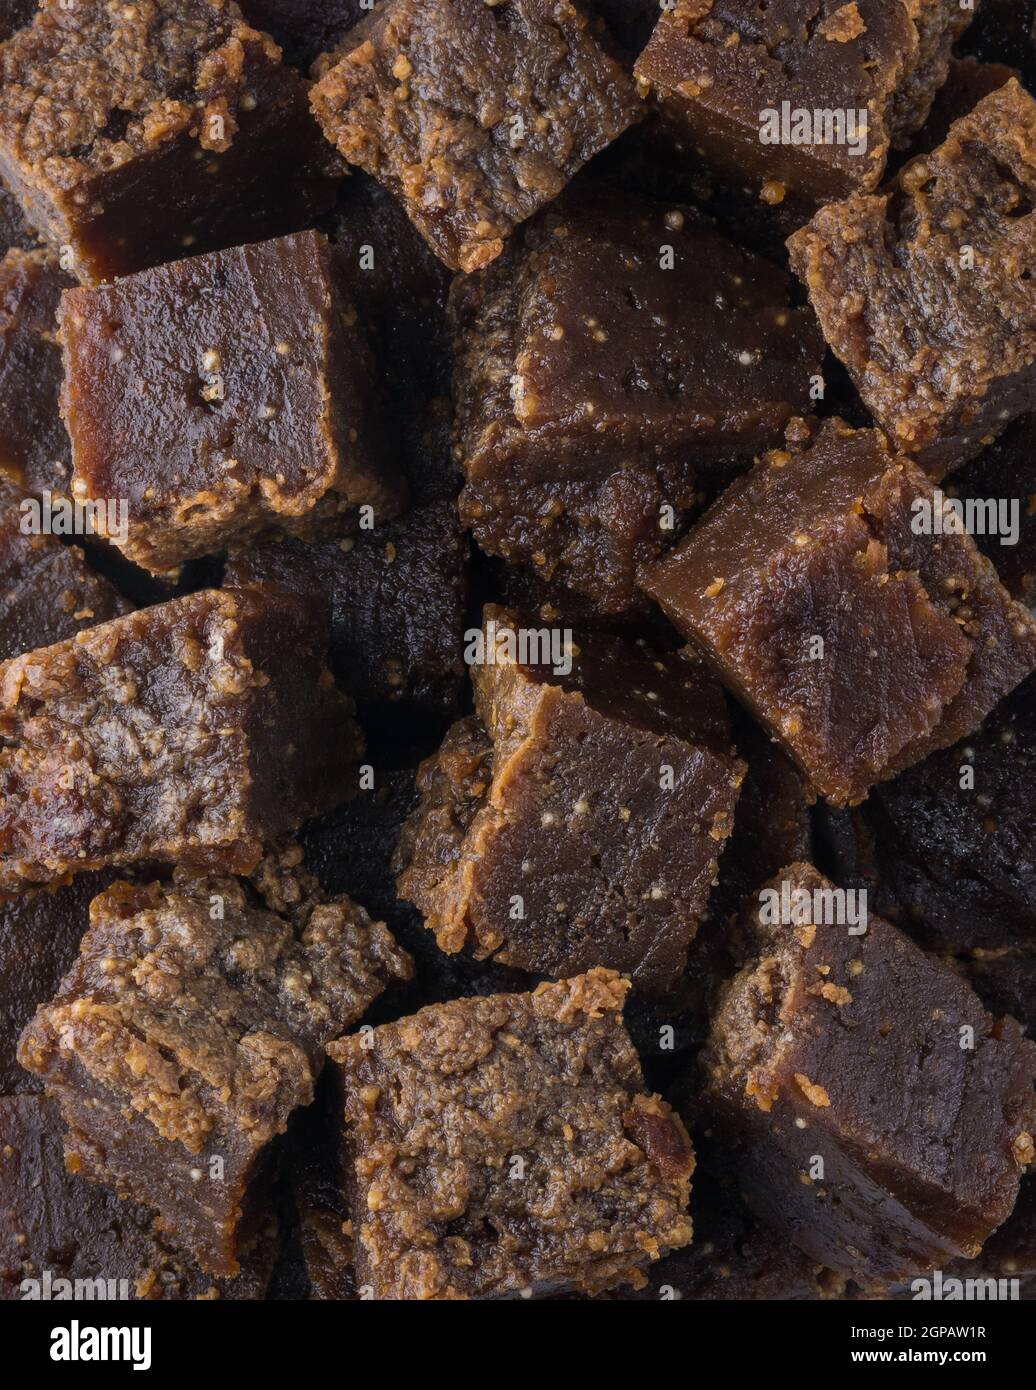 dol, también llamado dodol kalus en sri lanka, dulce oscuro, hecho de leche de coco, jaggery y harina de arroz, pegajoso, grueso, dulce toffee Foto de stock